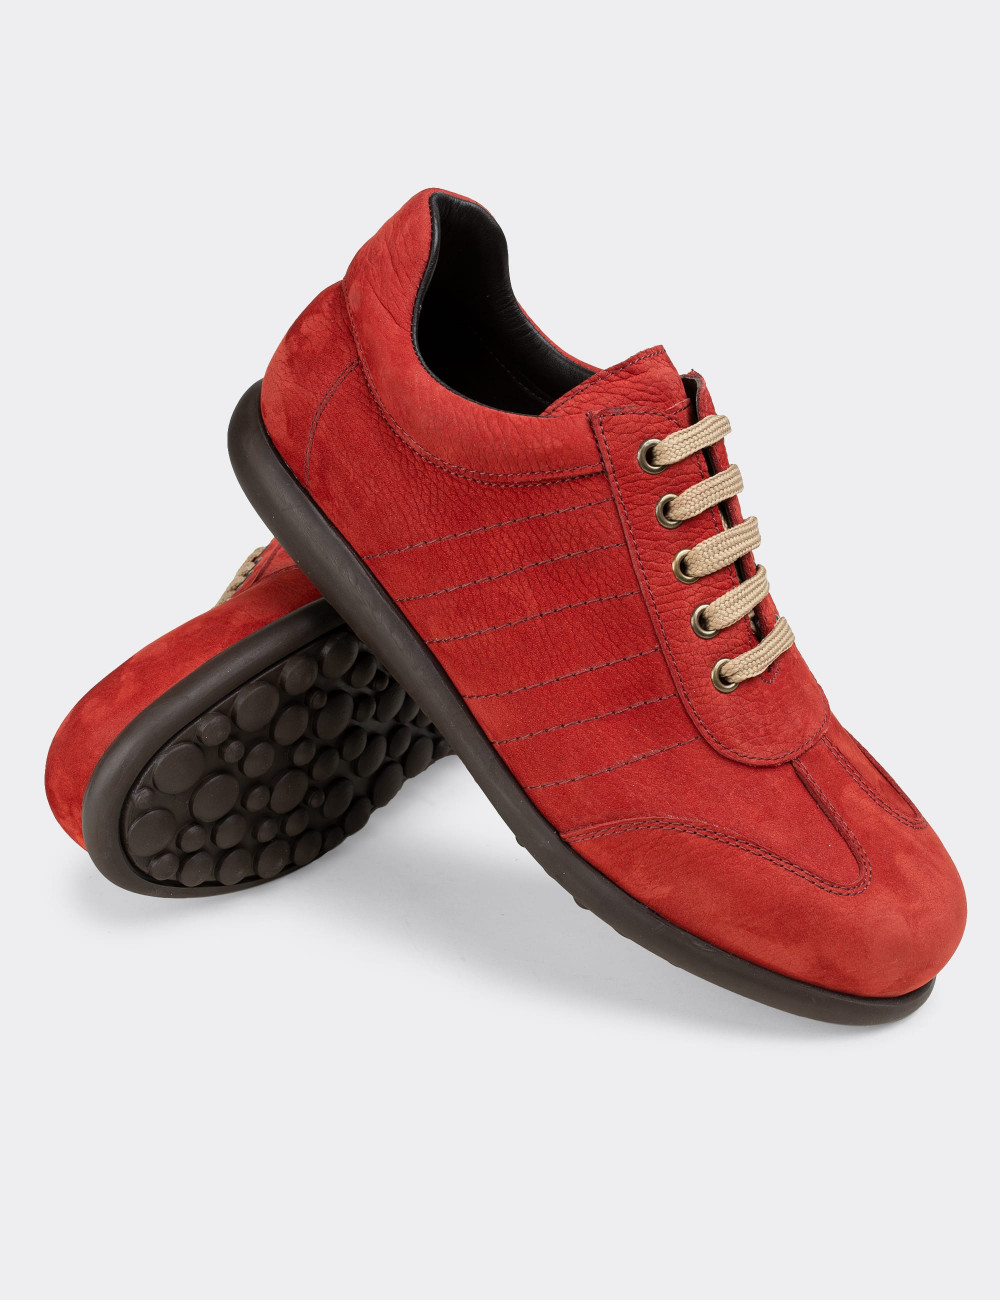 Hakiki Nubuk Kırmızı Günlük Erkek Ayakkabı - 01826MKRMC01